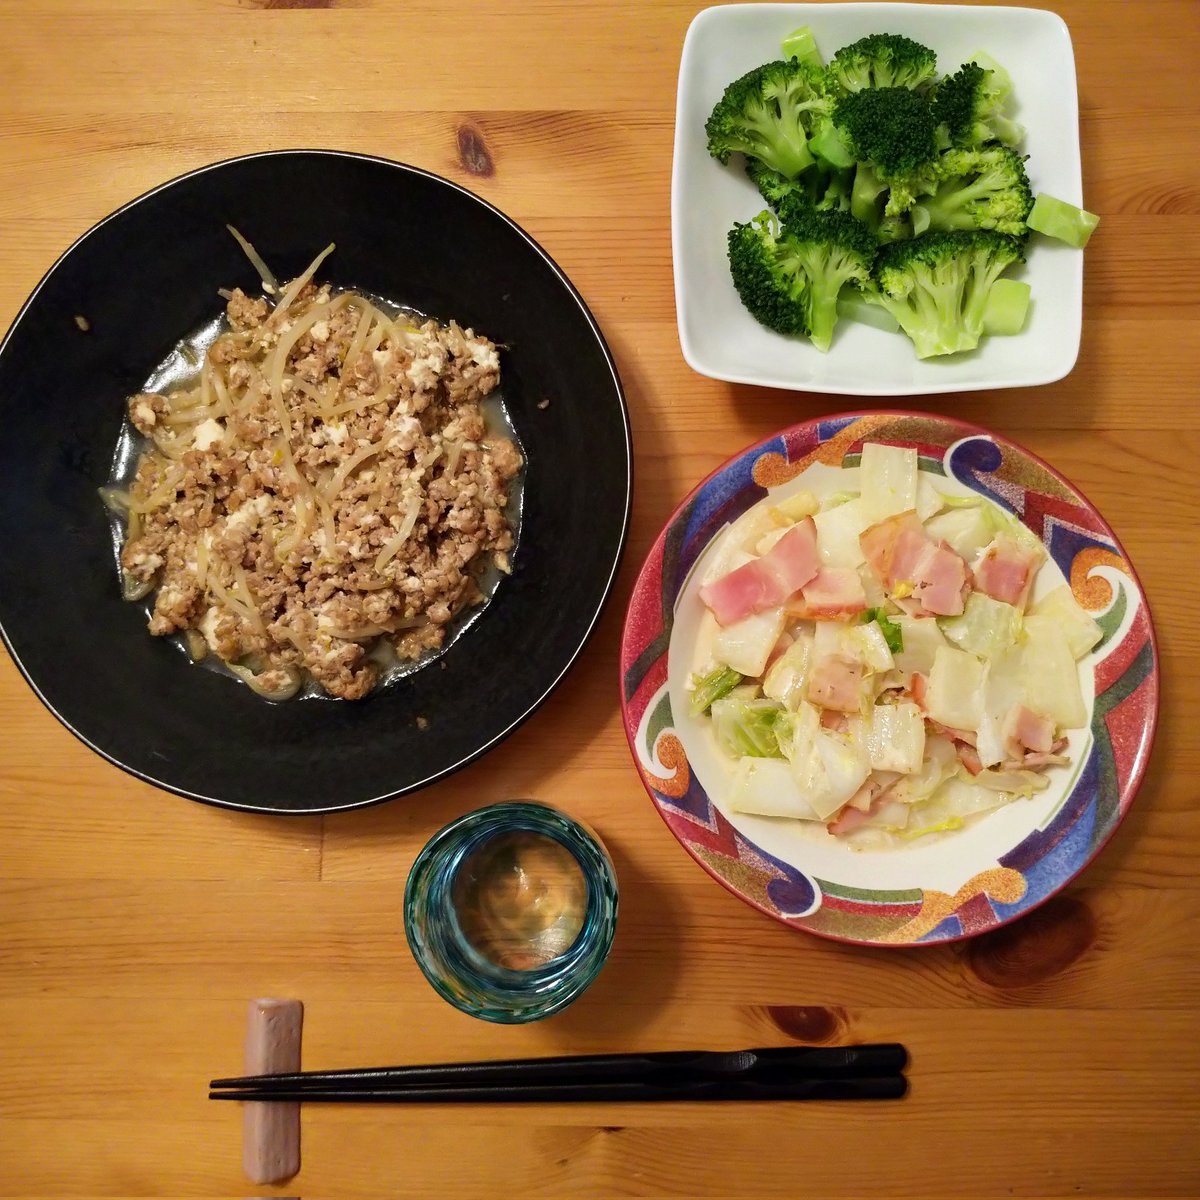 今日の夕飯💕もやし挽肉豆腐炒め🔥サラダはブロッコリー、何で食べるか悩み中🥗白菜とベーコン🥓のミルク煮込み✨ね😊いただきます〜🤣呑まれる方はかんぱーい🍻